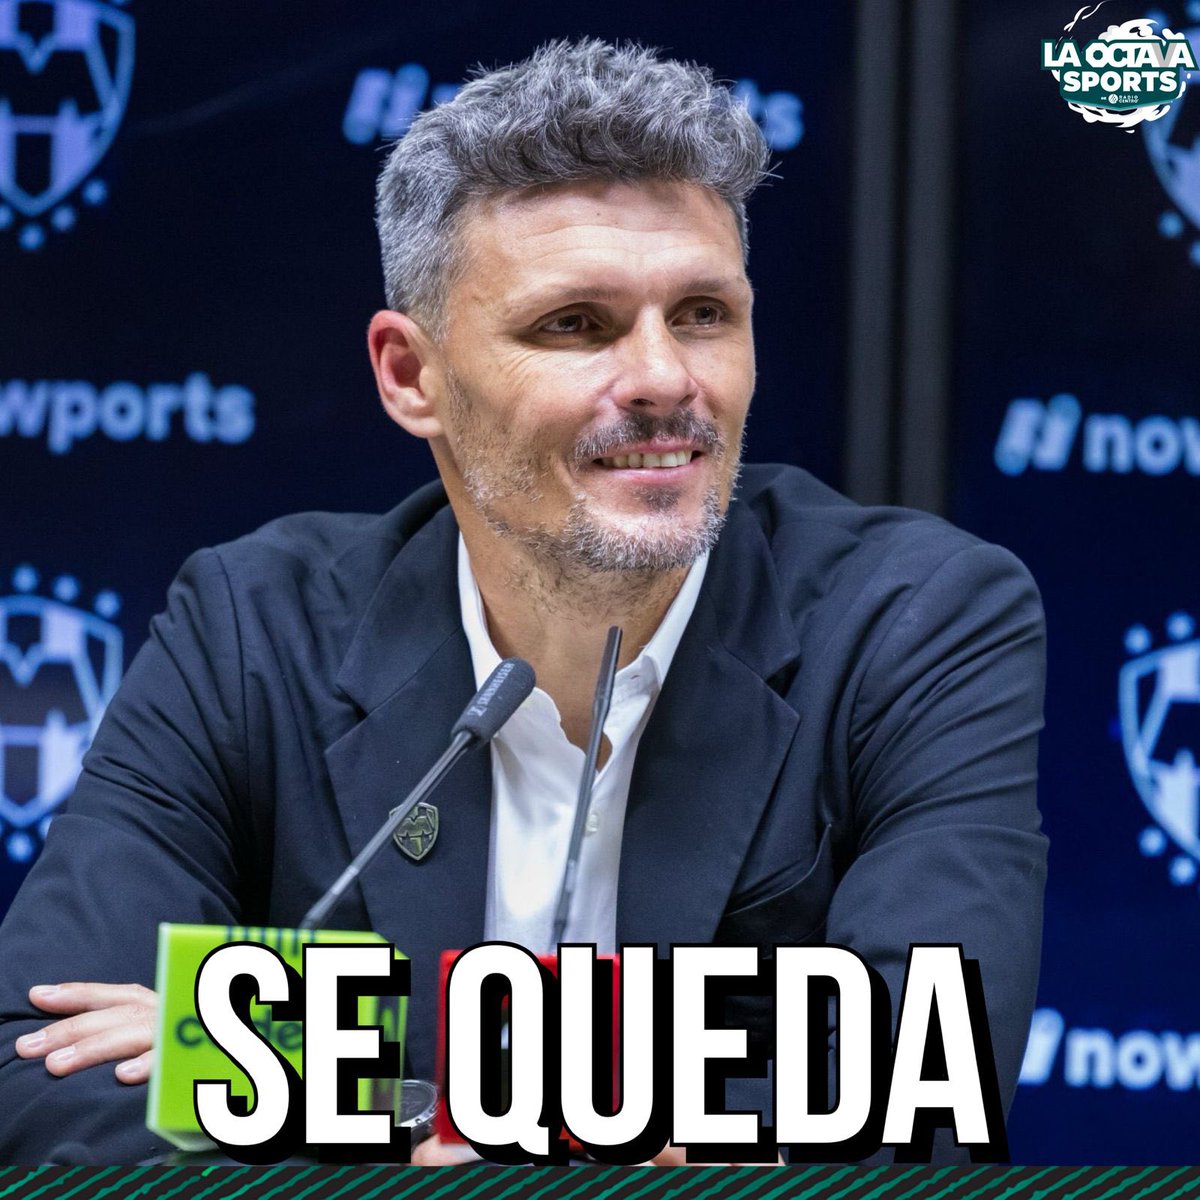 CONTINUARÁ EN LA PANDILLA✅🤠

Fernando ‘Tano’ Ortiz seguirá siendo entrenador de Rayados para el próximo torneo a pesar de quedar eliminados en semifinales⚽️✍️

Vía: Récord

#TeDaMásEmociones #Rayados #TanoOrtiz